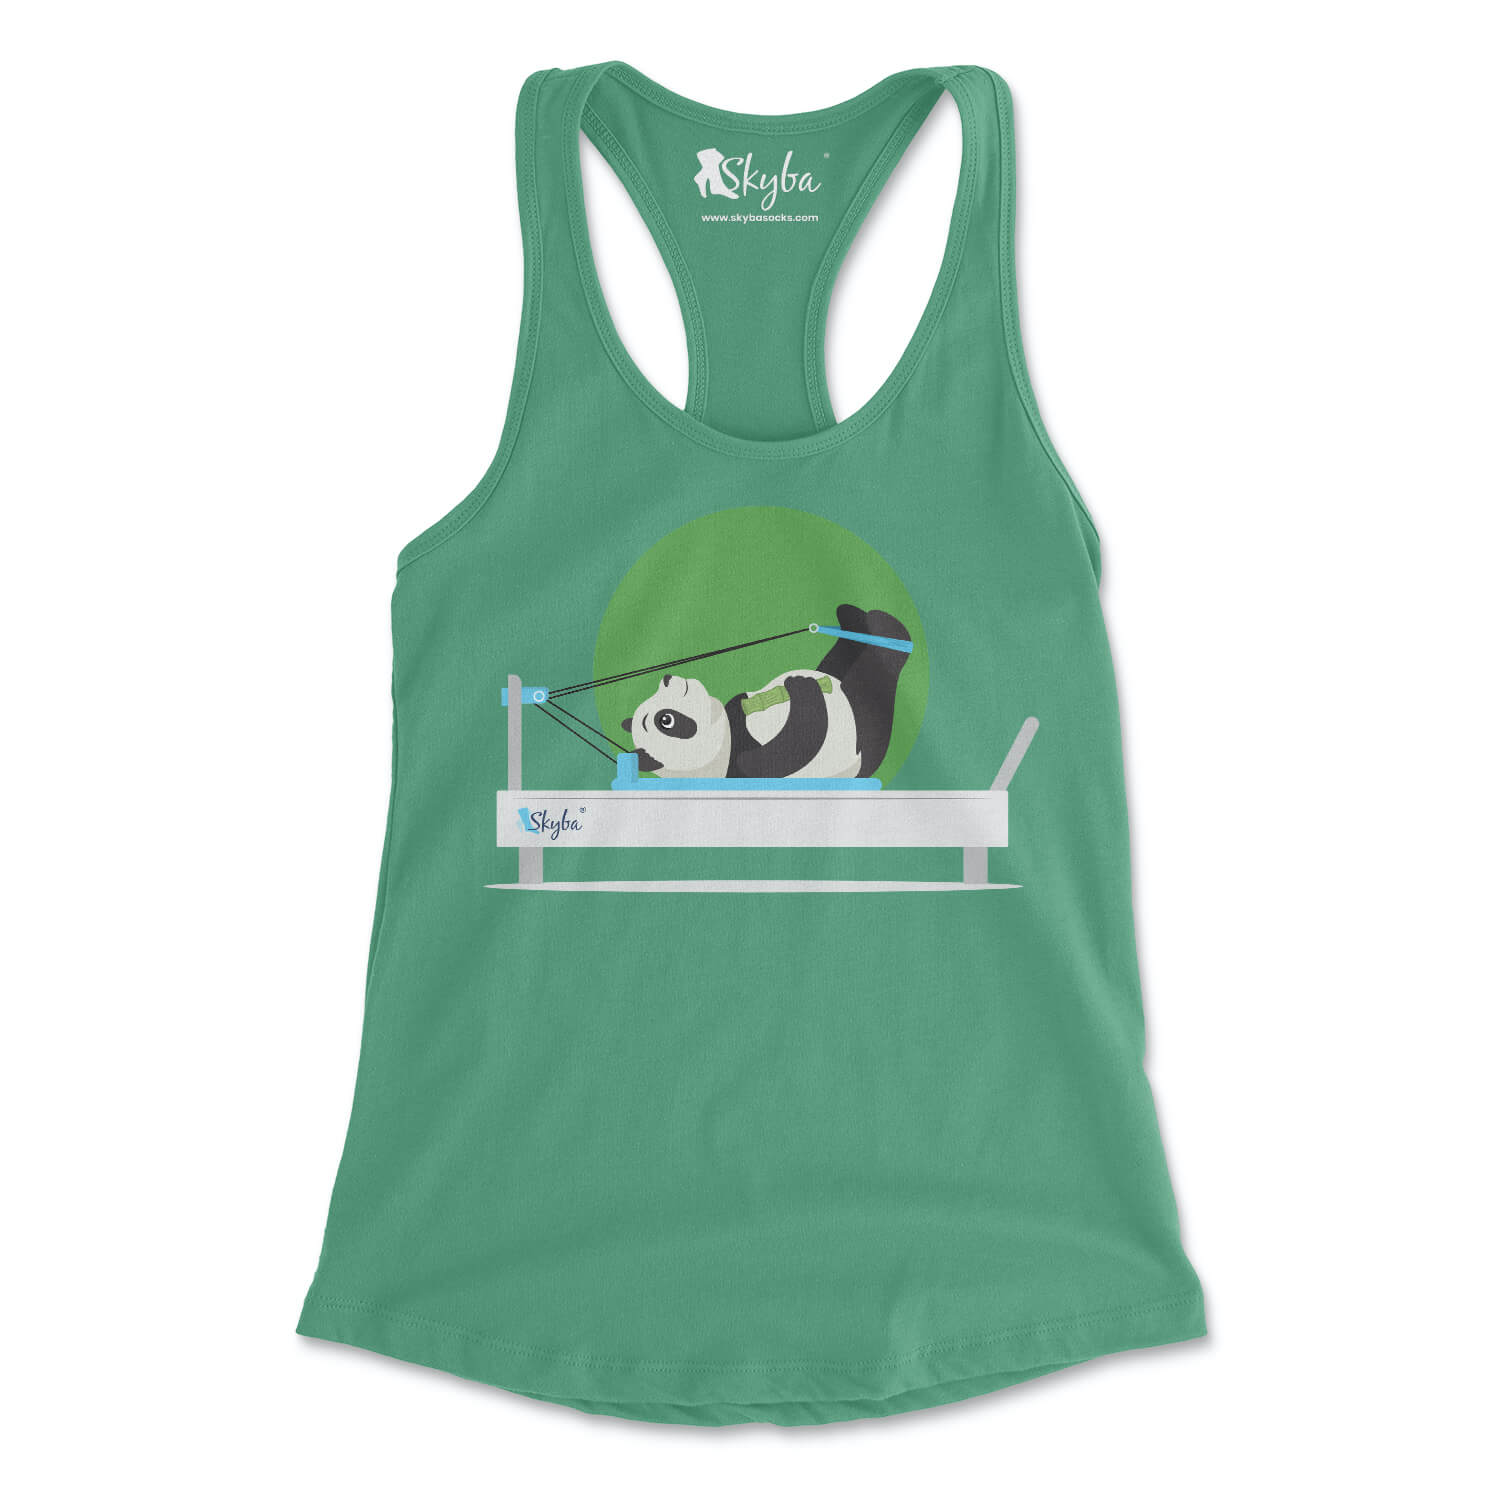 Focused Panda on Reformer - Women's Slim Fit Tank Skyba Tank Top